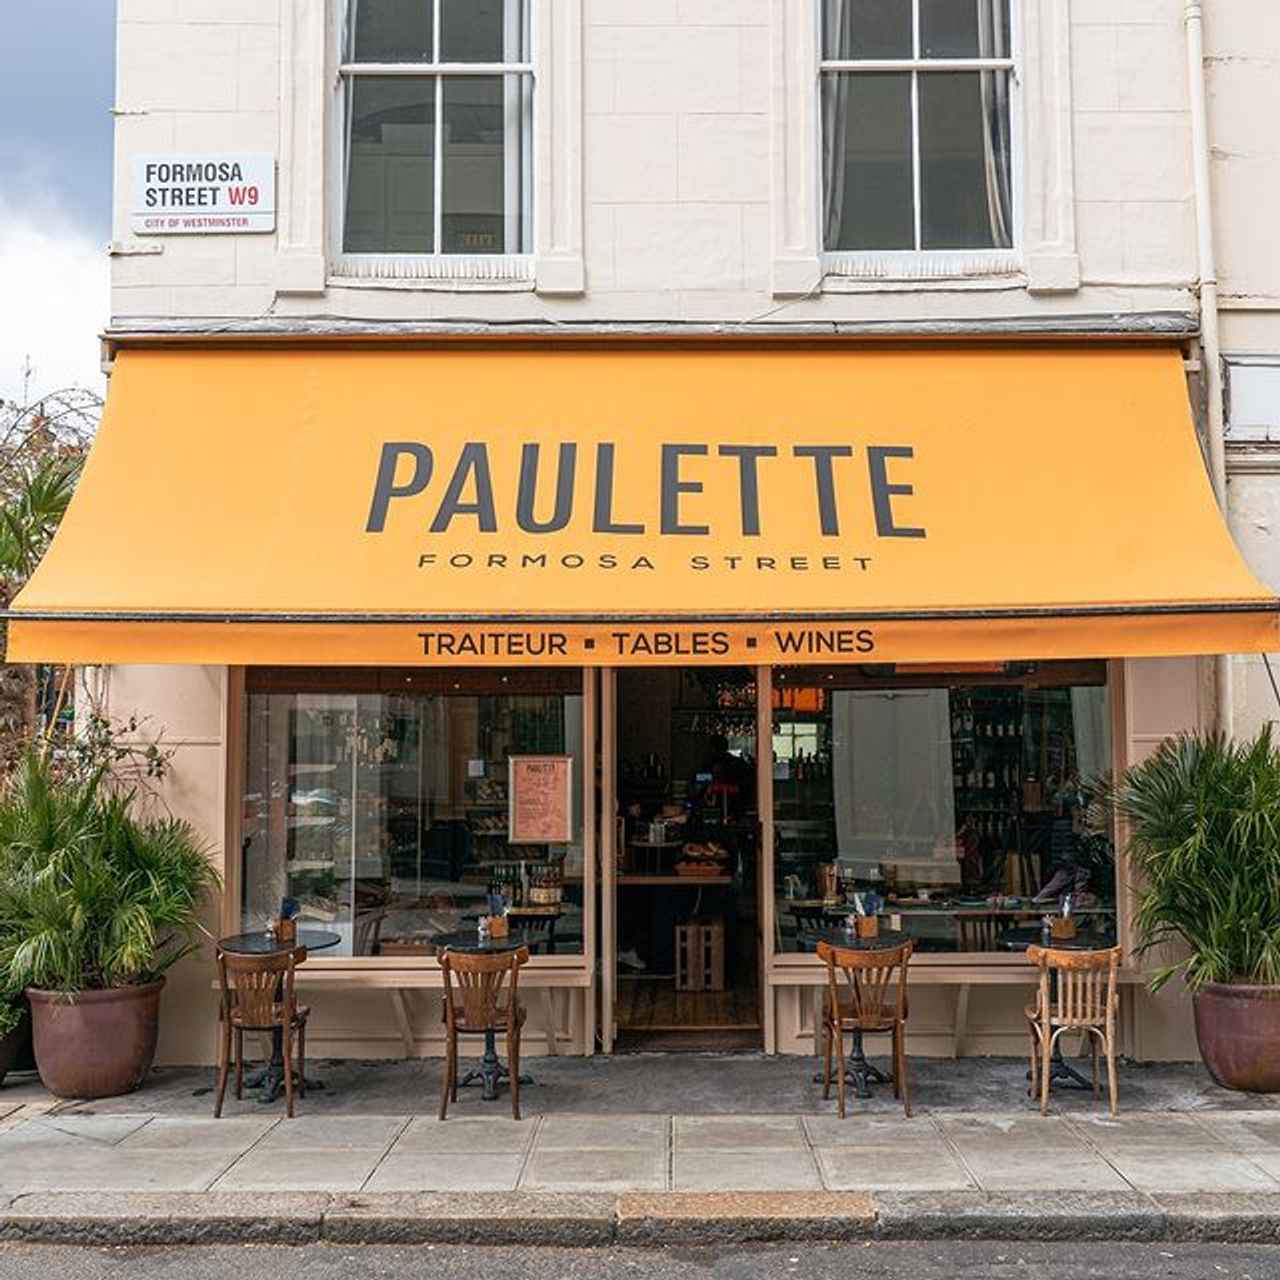 Paulette Restaurant, London French restaurants, Best London restaurants